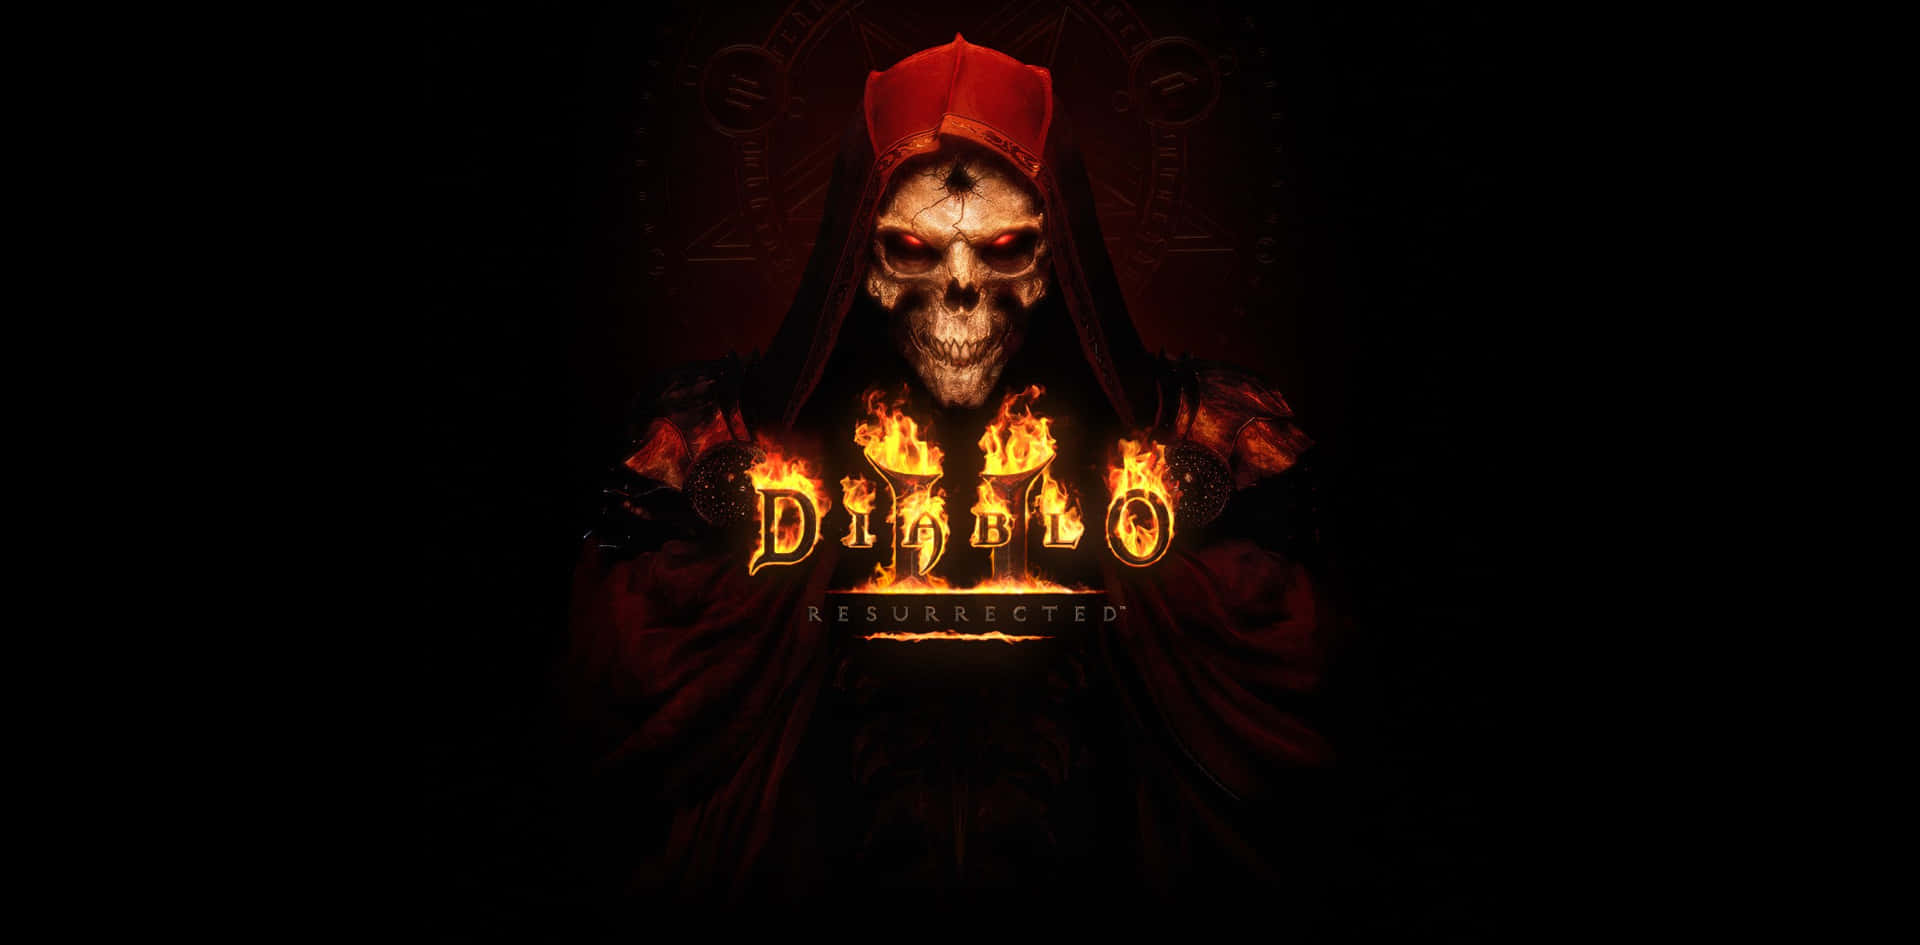 Diablo III-Wallpapers til computere Wallpaper